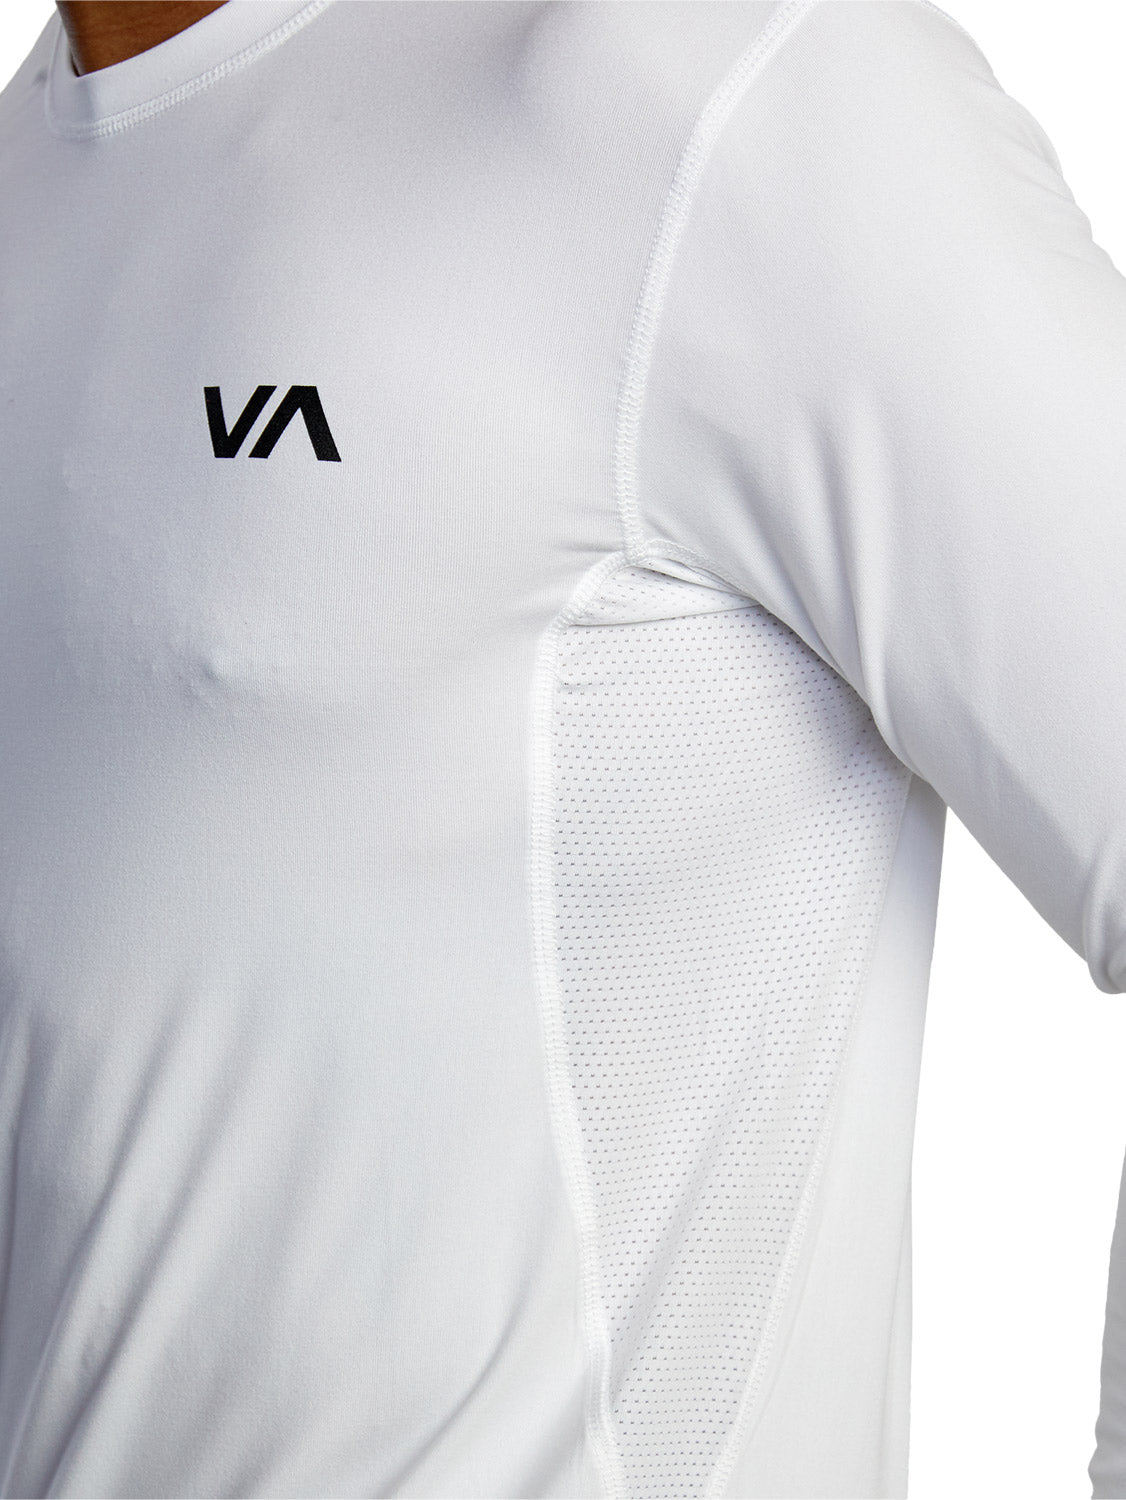 RVCA Men's Sport Vent Shirt